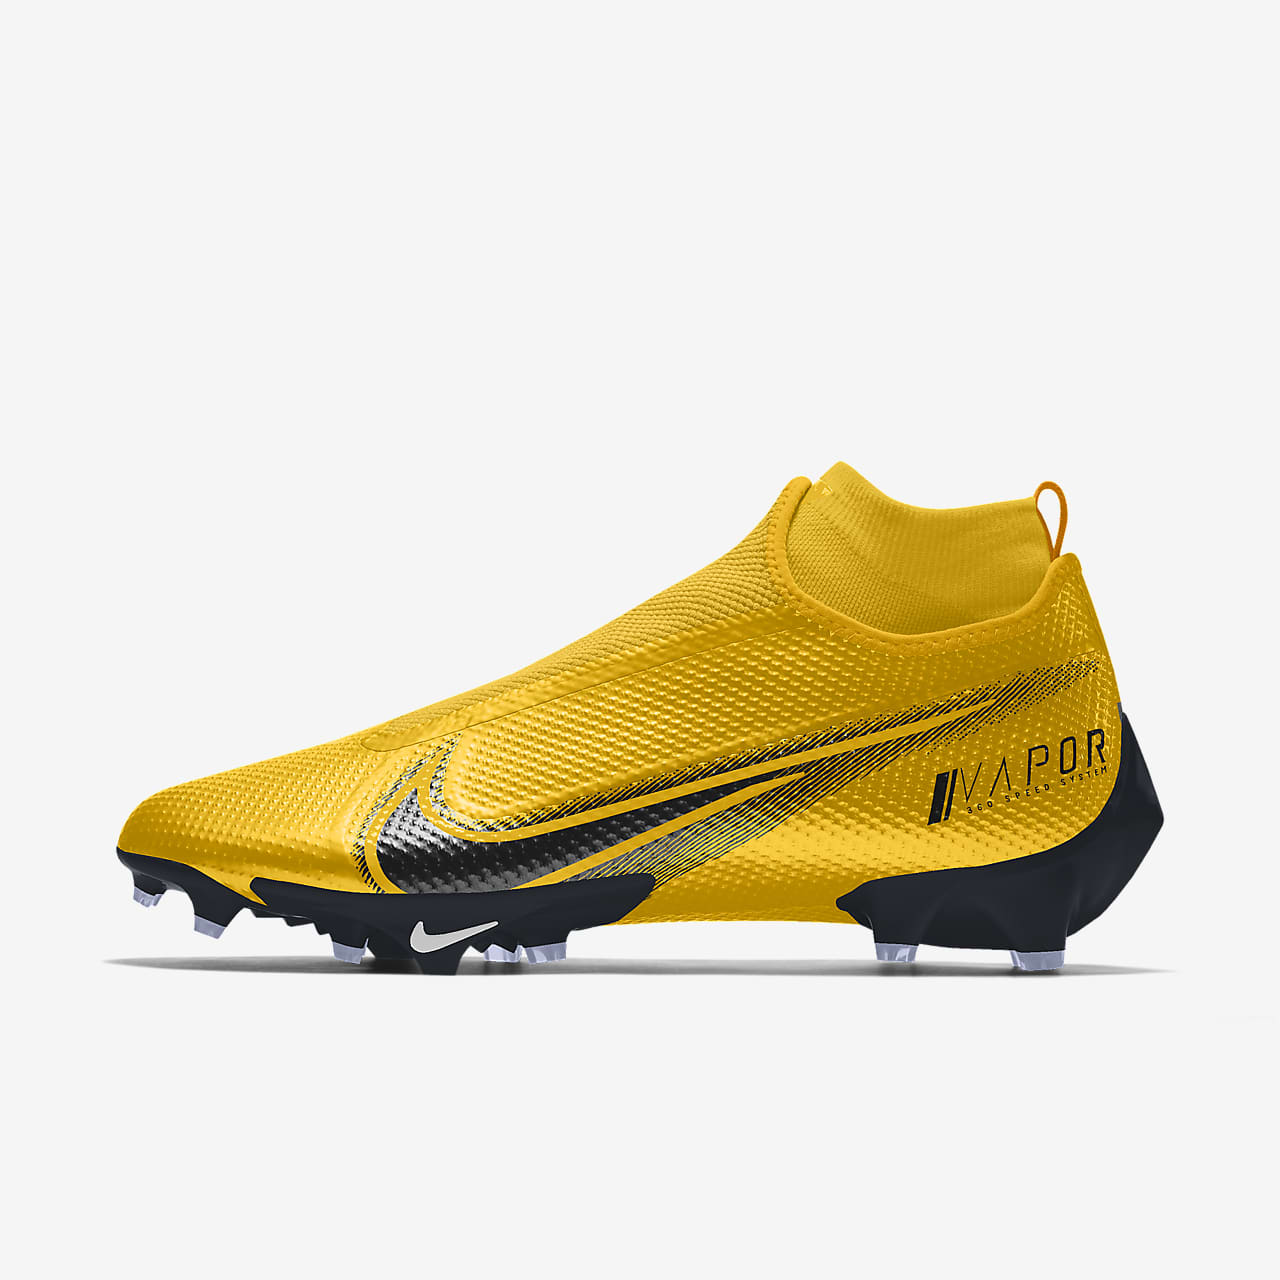 vapor 360 football boots